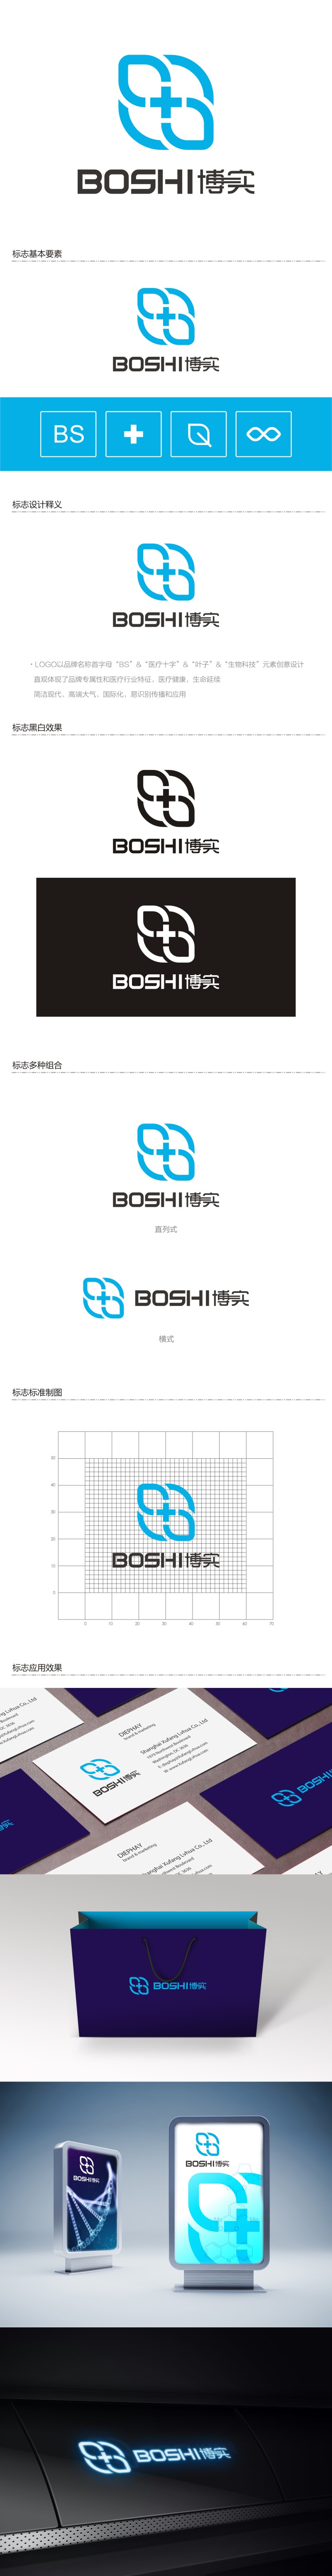 陈国伟的博实logo设计